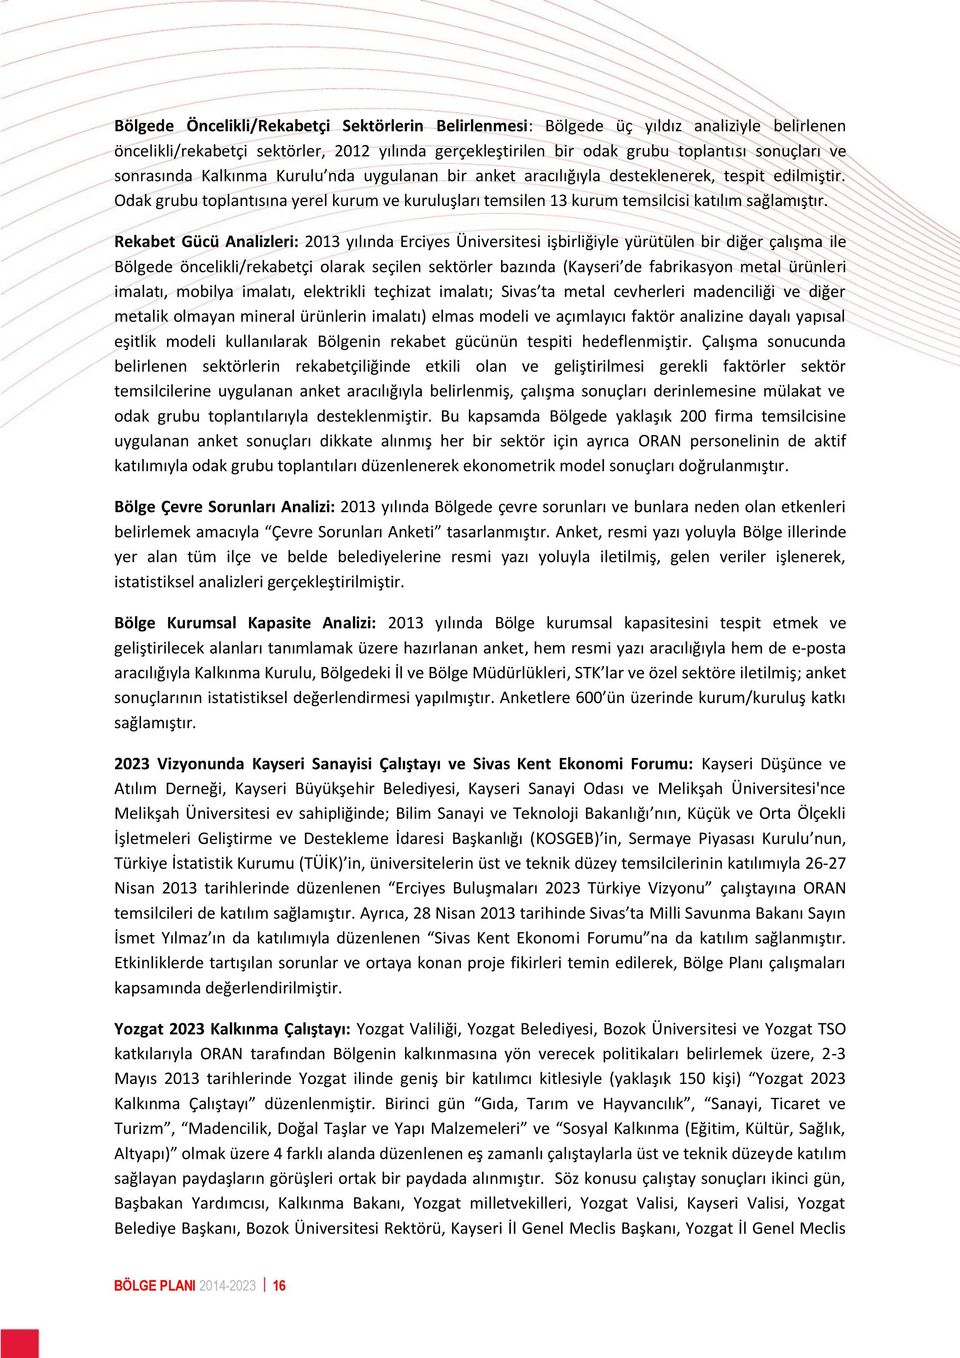 Rekabet Gücü Analizleri: 2013 yılında Erciyes Üniversitesi işbirliğiyle yürütülen bir diğer çalışma ile Bölgede öncelikli/rekabetçi olarak seçilen sektörler bazında (Kayseri de fabrikasyon metal